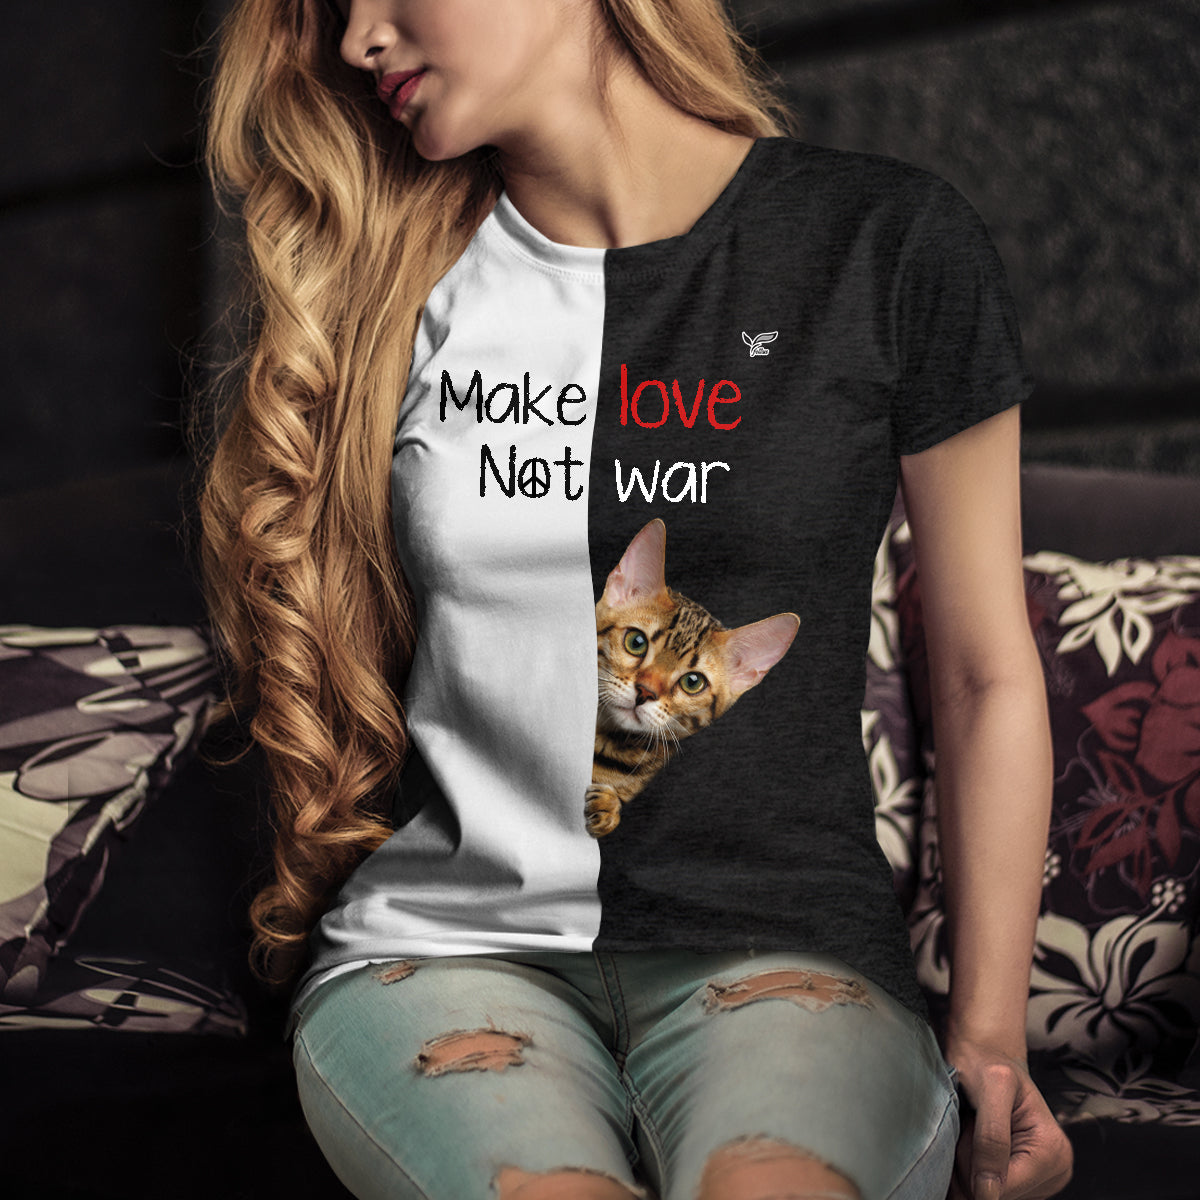 Faites l'amour, pas la guerre - T-shirt chat du Bengale V1